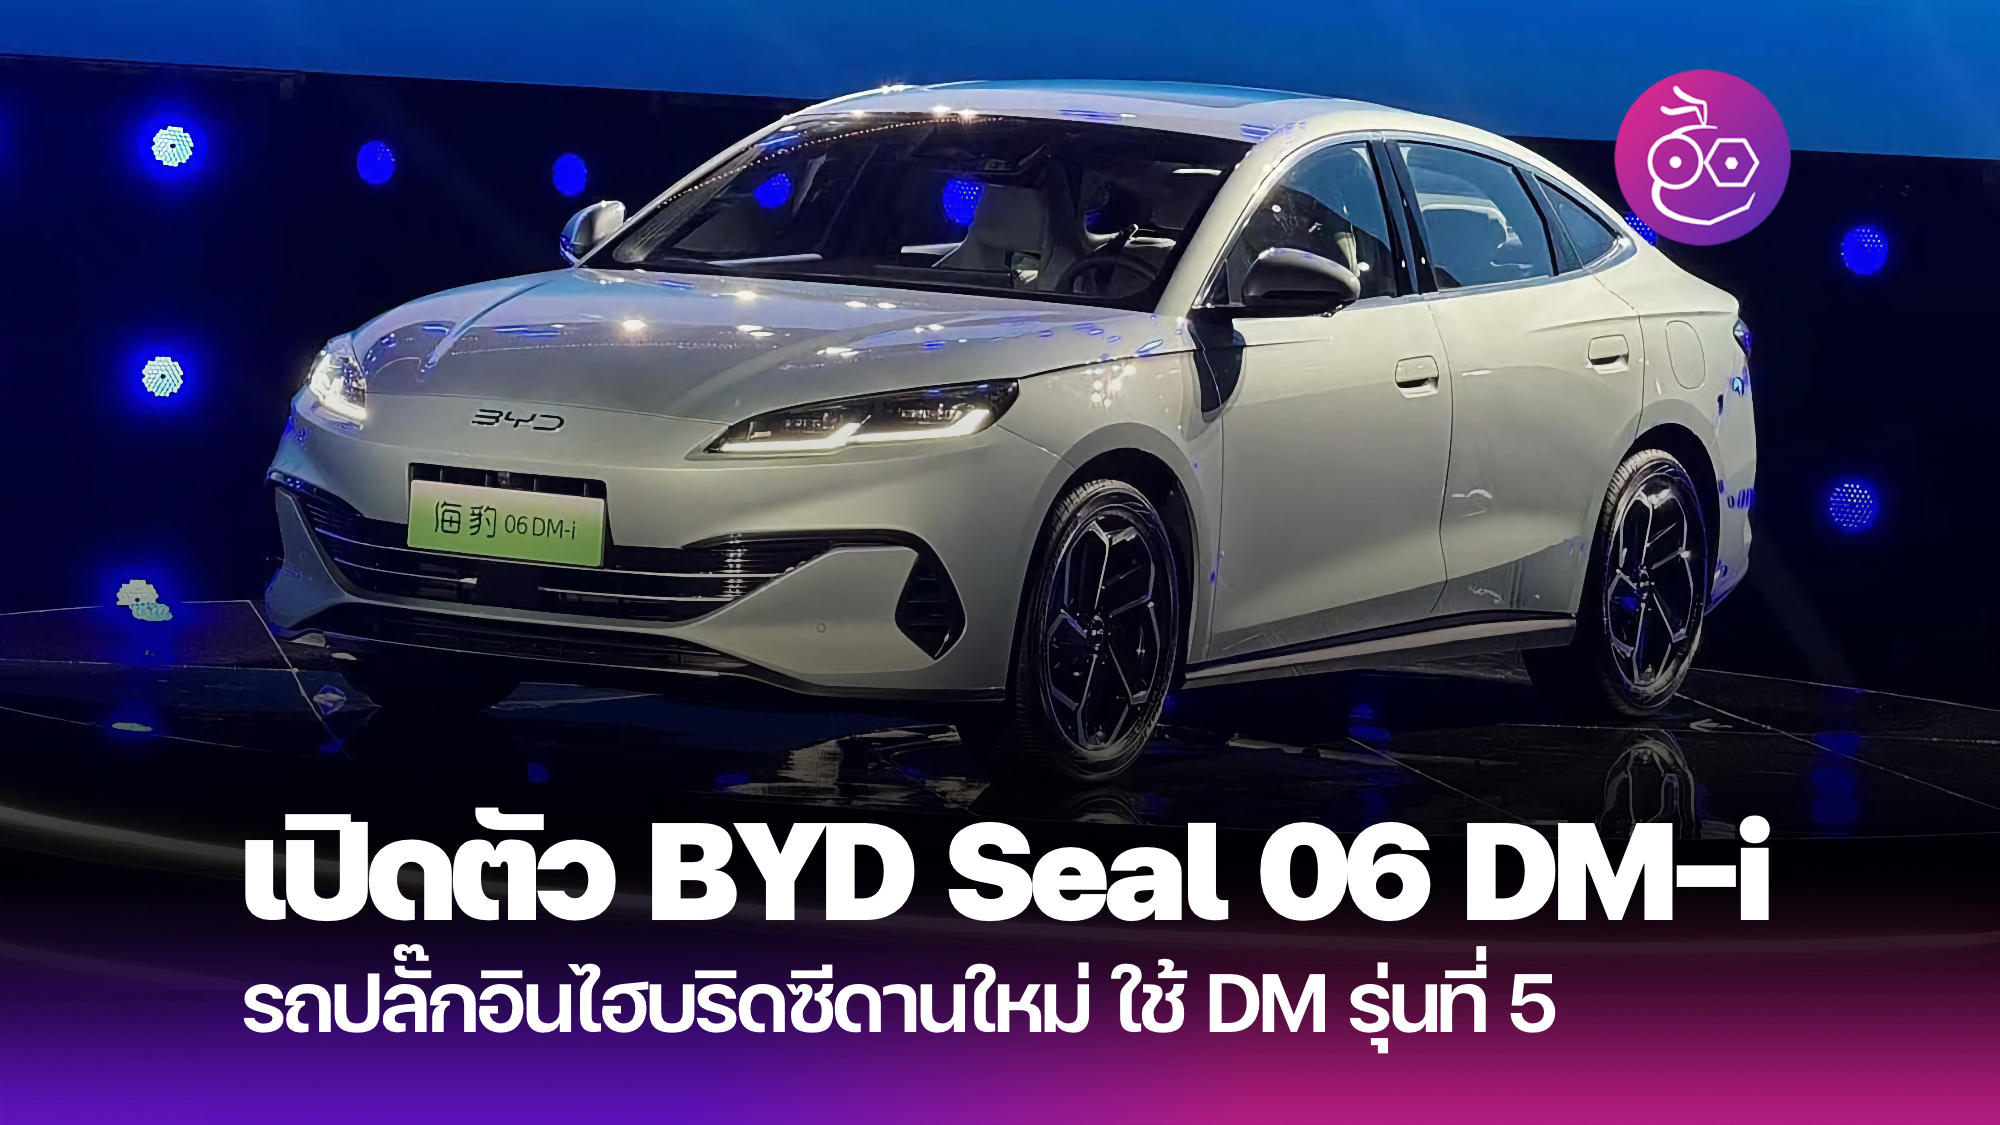 比亚迪推出 Seal 06 DM-i PHEV，配备全新 DM 第 5 代技术，起价约为 516,000 泰铢。